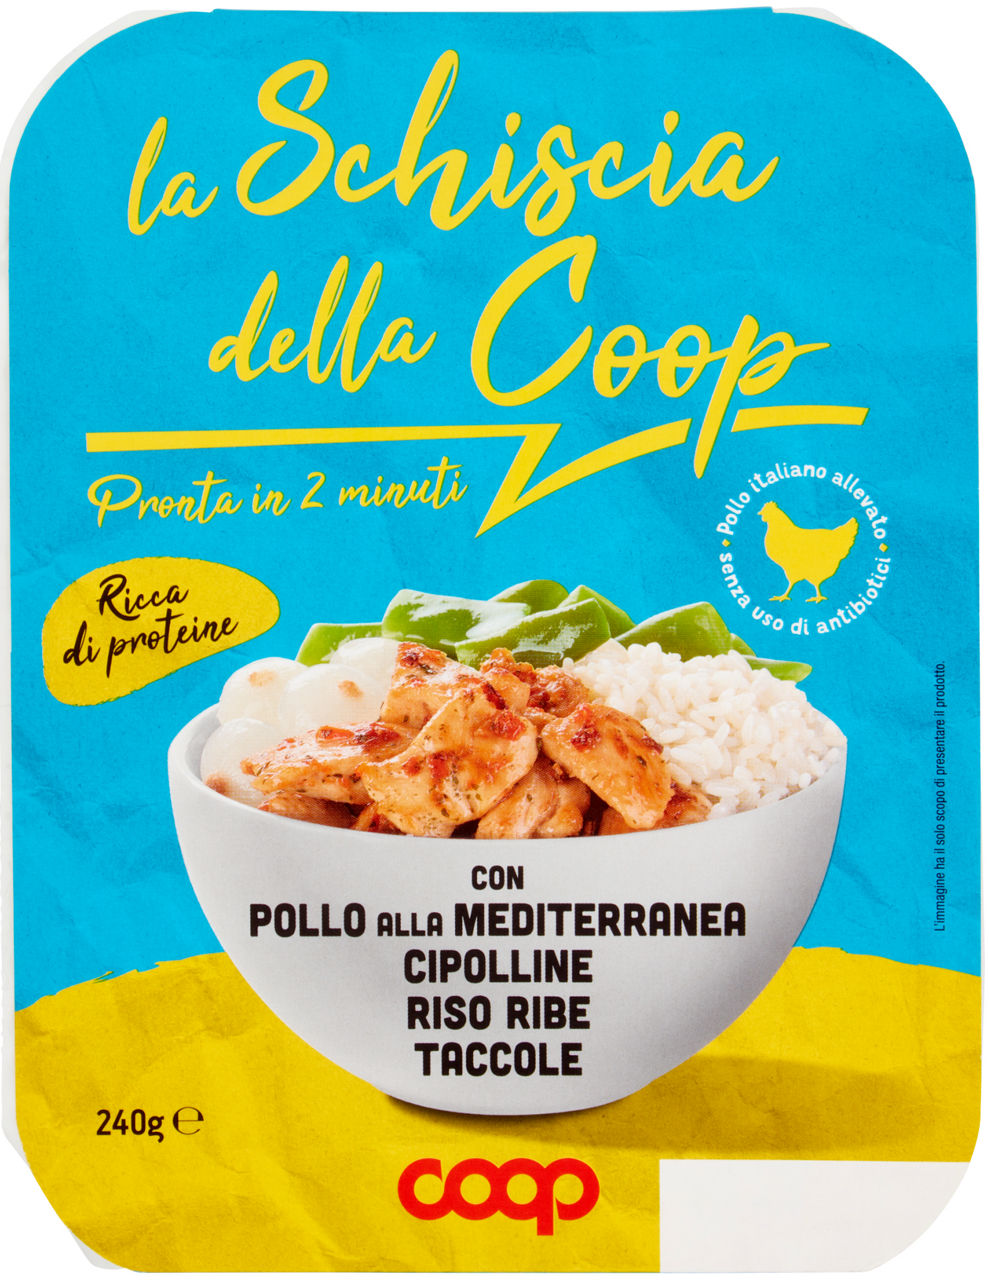 La schiscia pollo alla mediterranea, cipolline, riso e taccole coop g 240